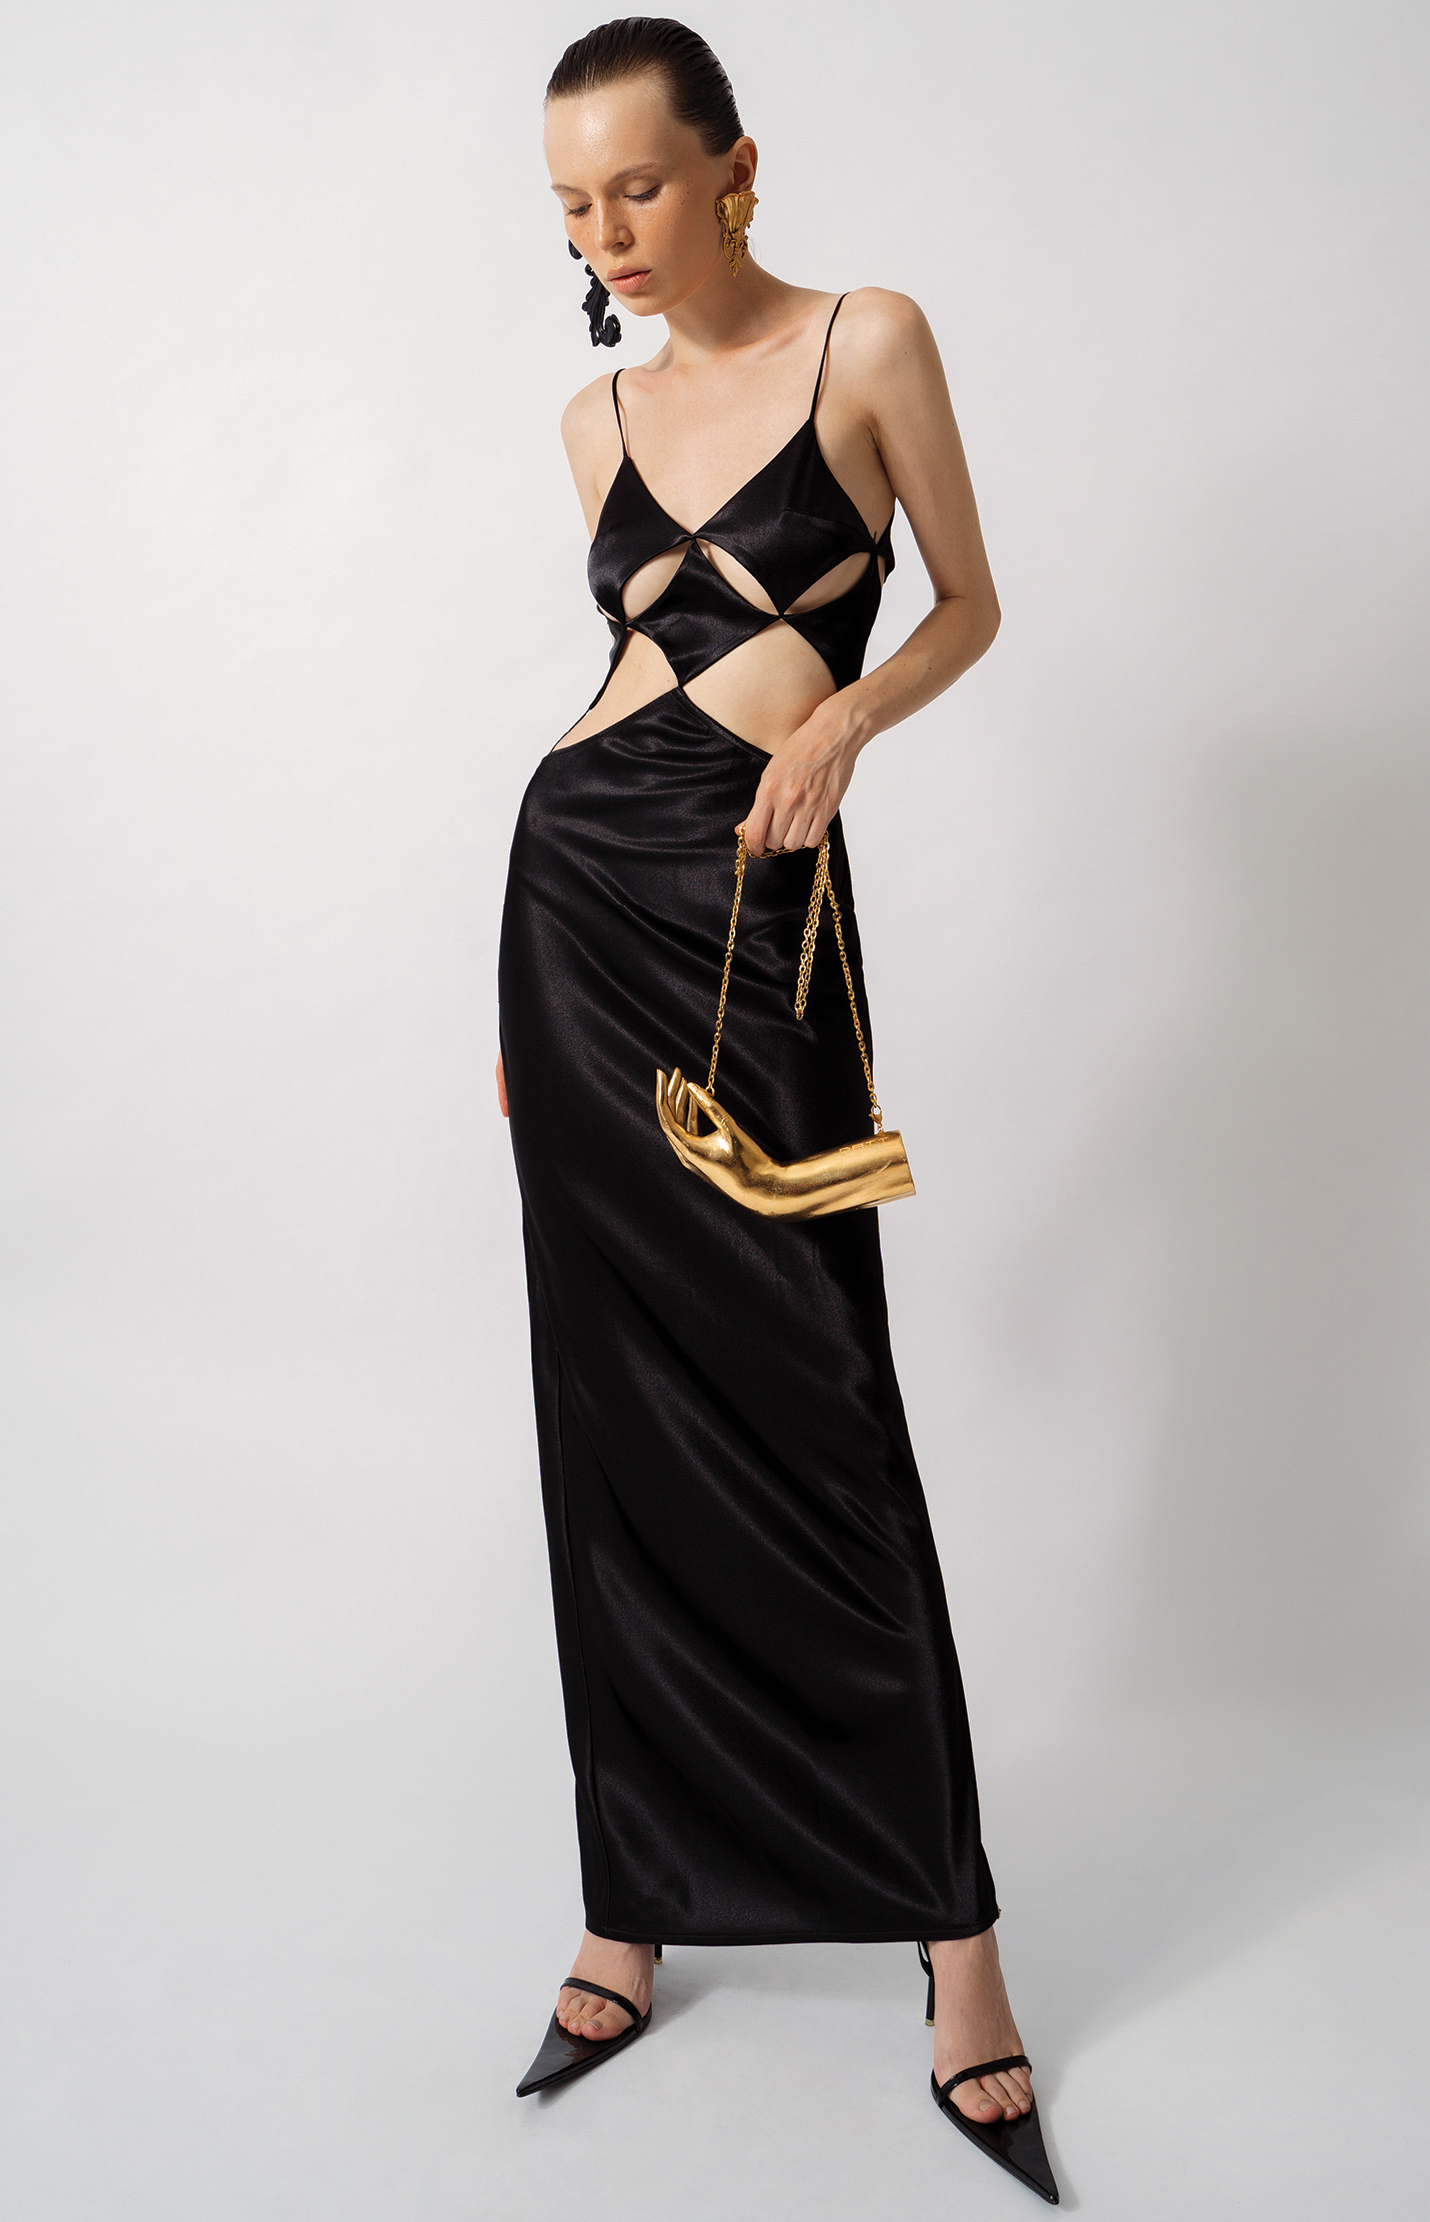 Aphro Venus Gown – DATT OFFICIAL